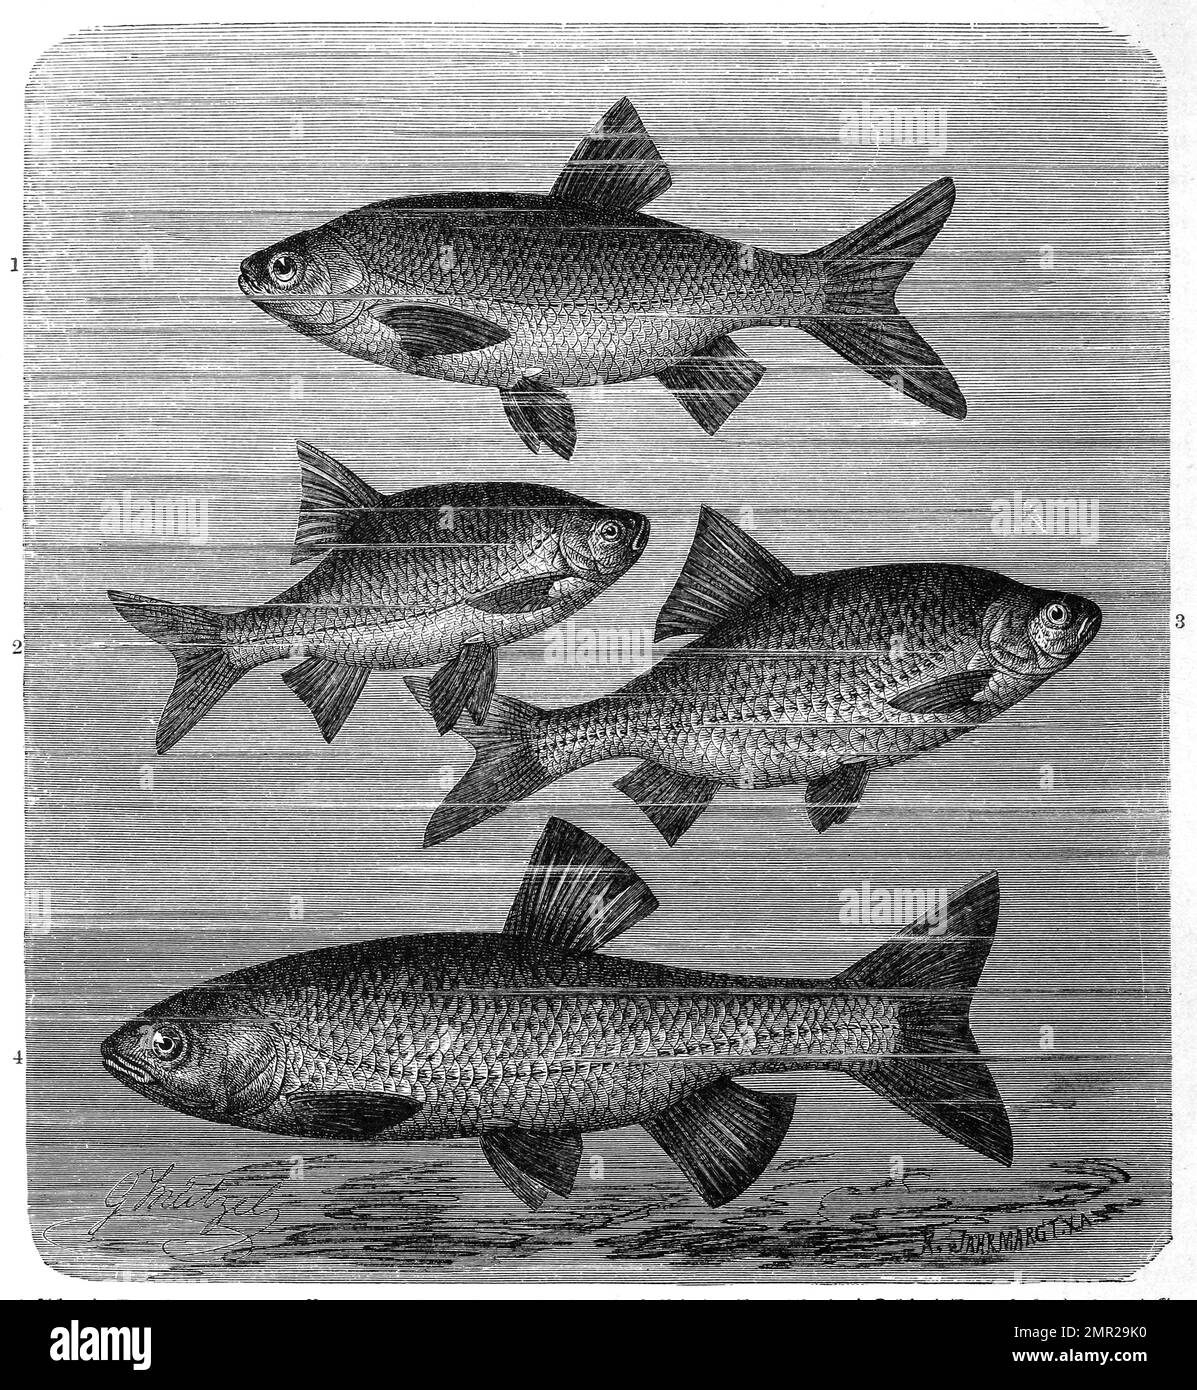 Fisch, 1. Aland, Leuciscus idus, auch Orfe oder Nerfling, Fischart aus der Familie der Karpfenfische, 2. Rotauge, Rutilus rutilus, Plötze, Unechte Rotfeder oder der Schwal, Leuciscus erythrophthalmus, 3. Plötze, Unechte Rotfeder, Leuciscus rutilus, 4. Döbel, Squalius cephalus, Syn. Leuciscus cephalus, auch Alet, Eitel oder Aitel genannt, Fischart aus der Ordnung der Karpfenartigen, Historisch, digital restaurierte Reproduktion von einer Vorlage aus dem 19. Jahrhundert Stock Photo